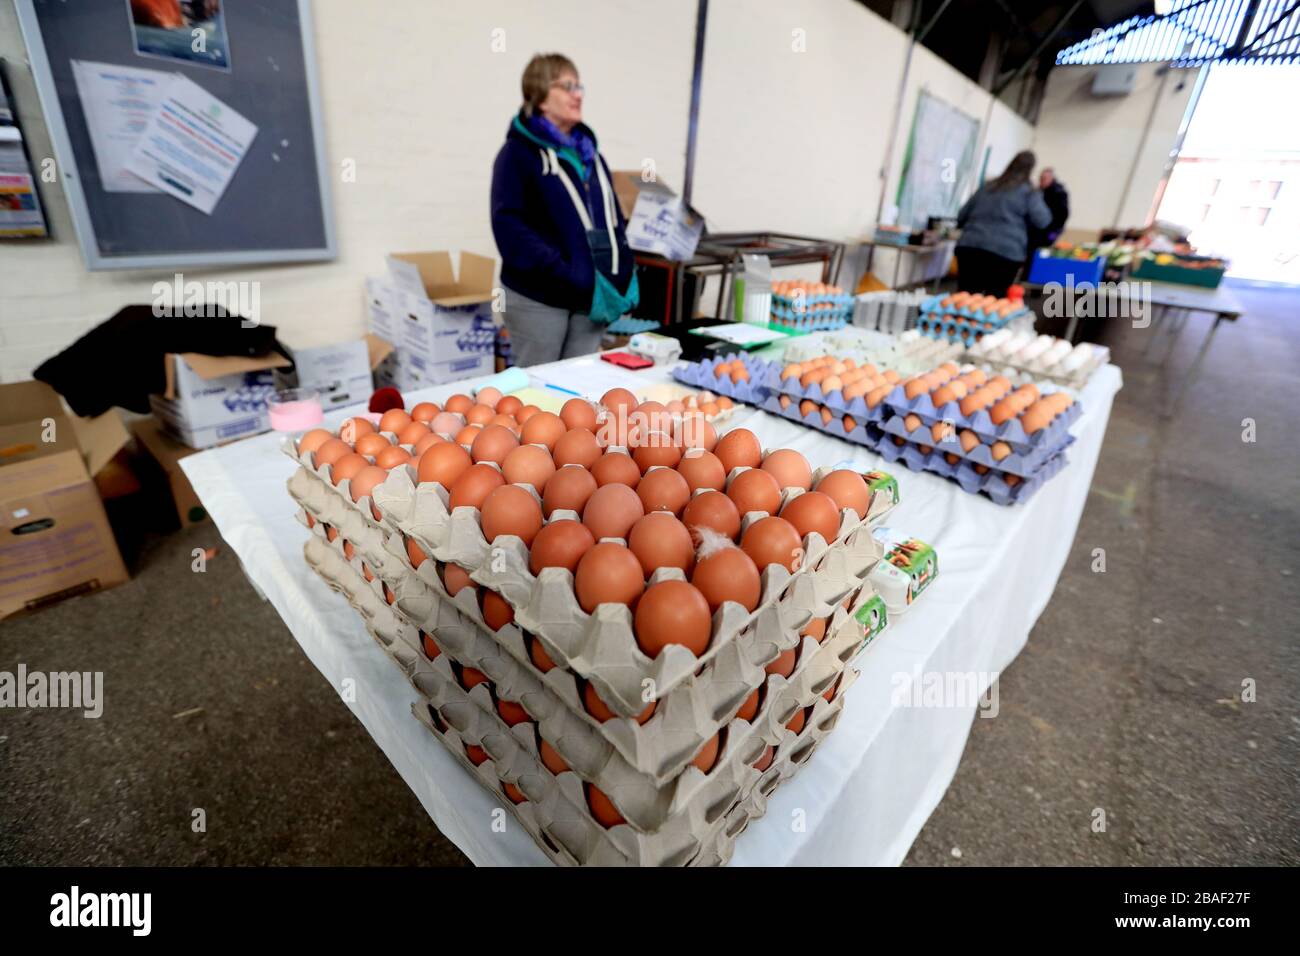 Propriétaire d'un marché avec des œufs en vente sur un marché agricole principalement vide à Melton Mowbray, Leicestershire comme le Royaume-Uni continue de se verrouiller pour aider à freiner la propagation du coronavirus. Banque D'Images